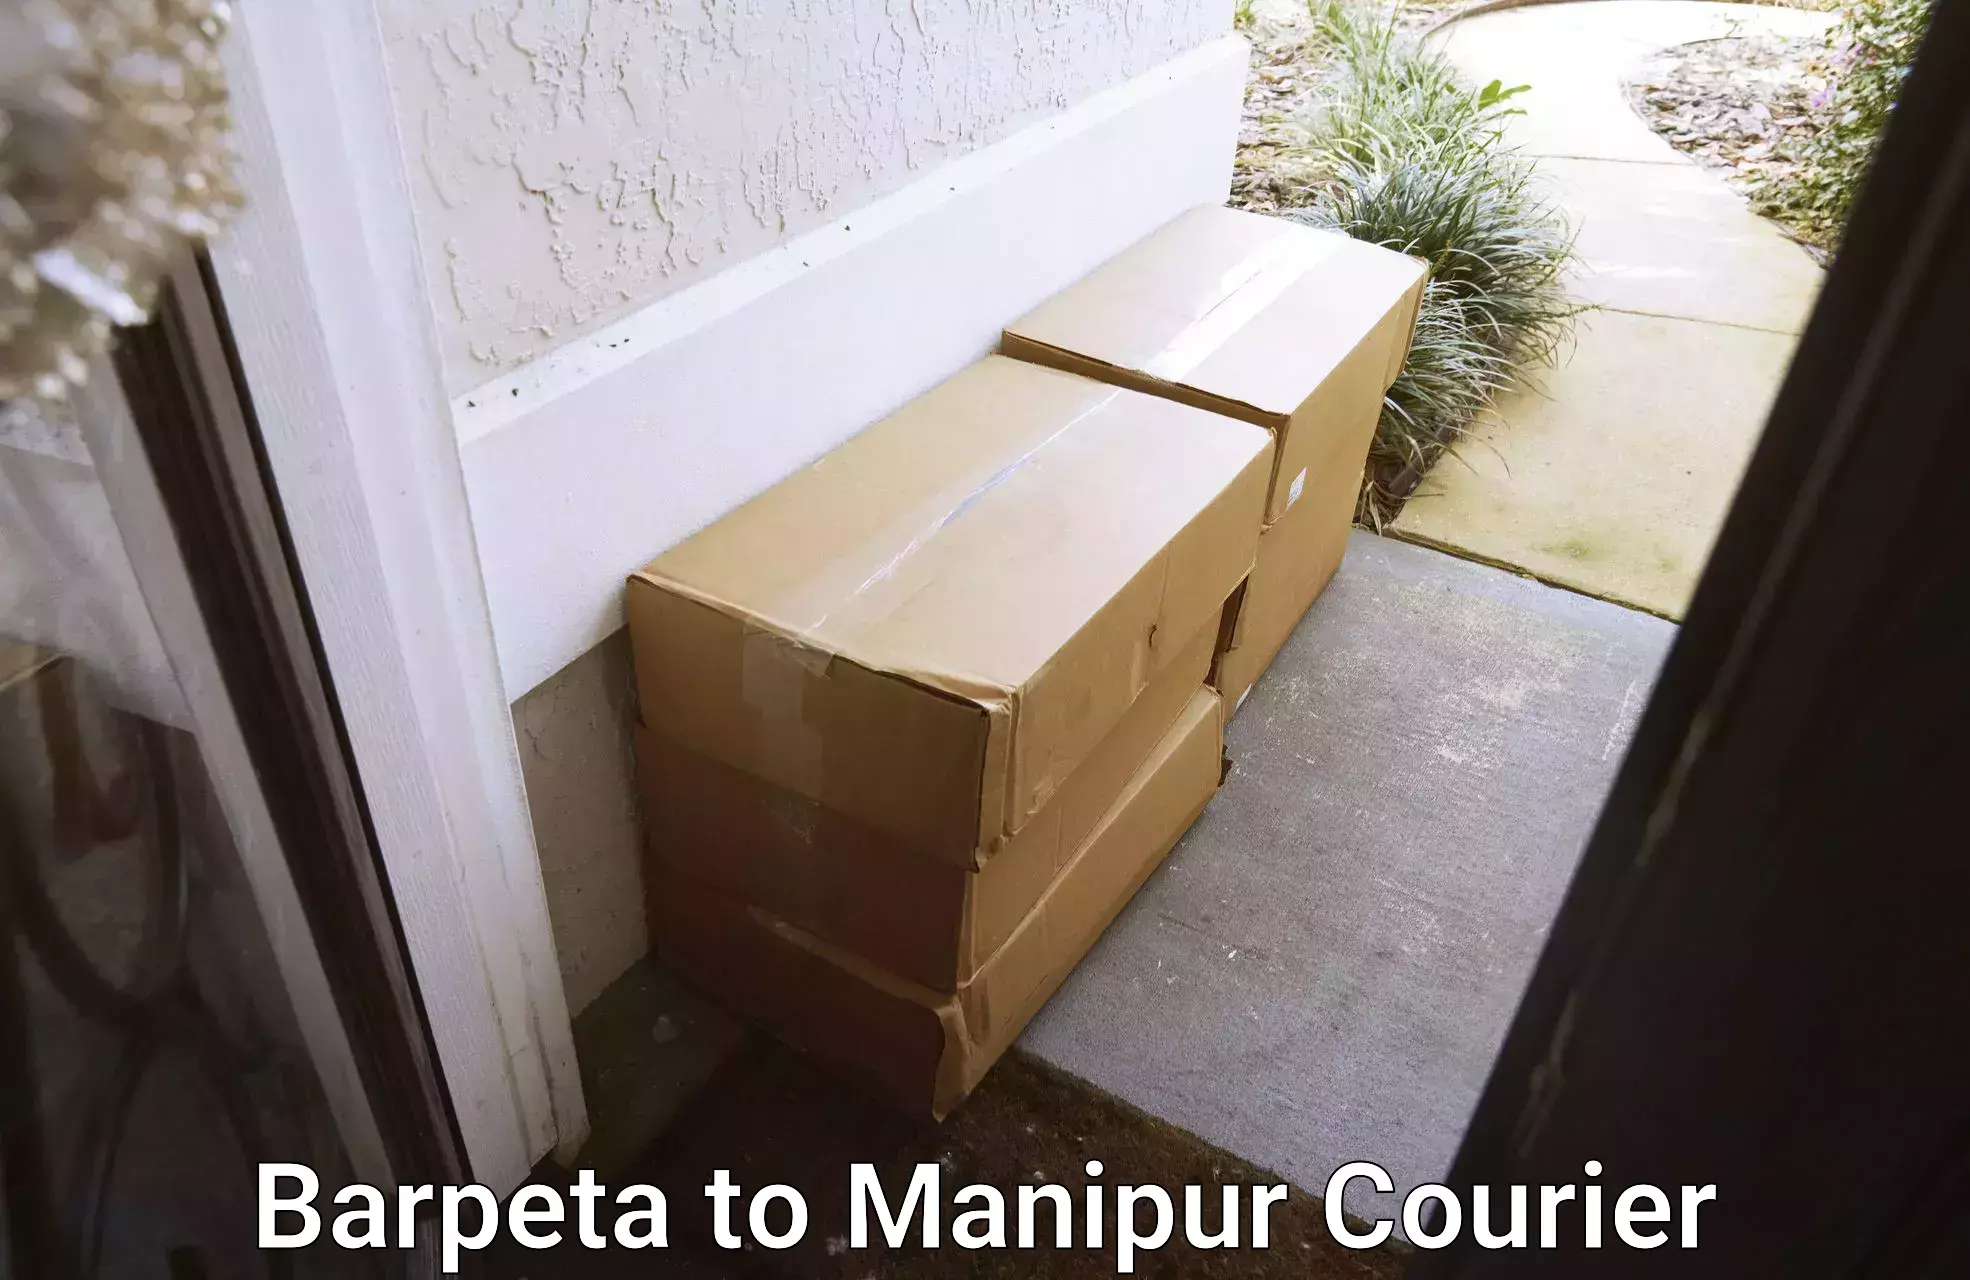 High-speed parcel service Barpeta to Moirang